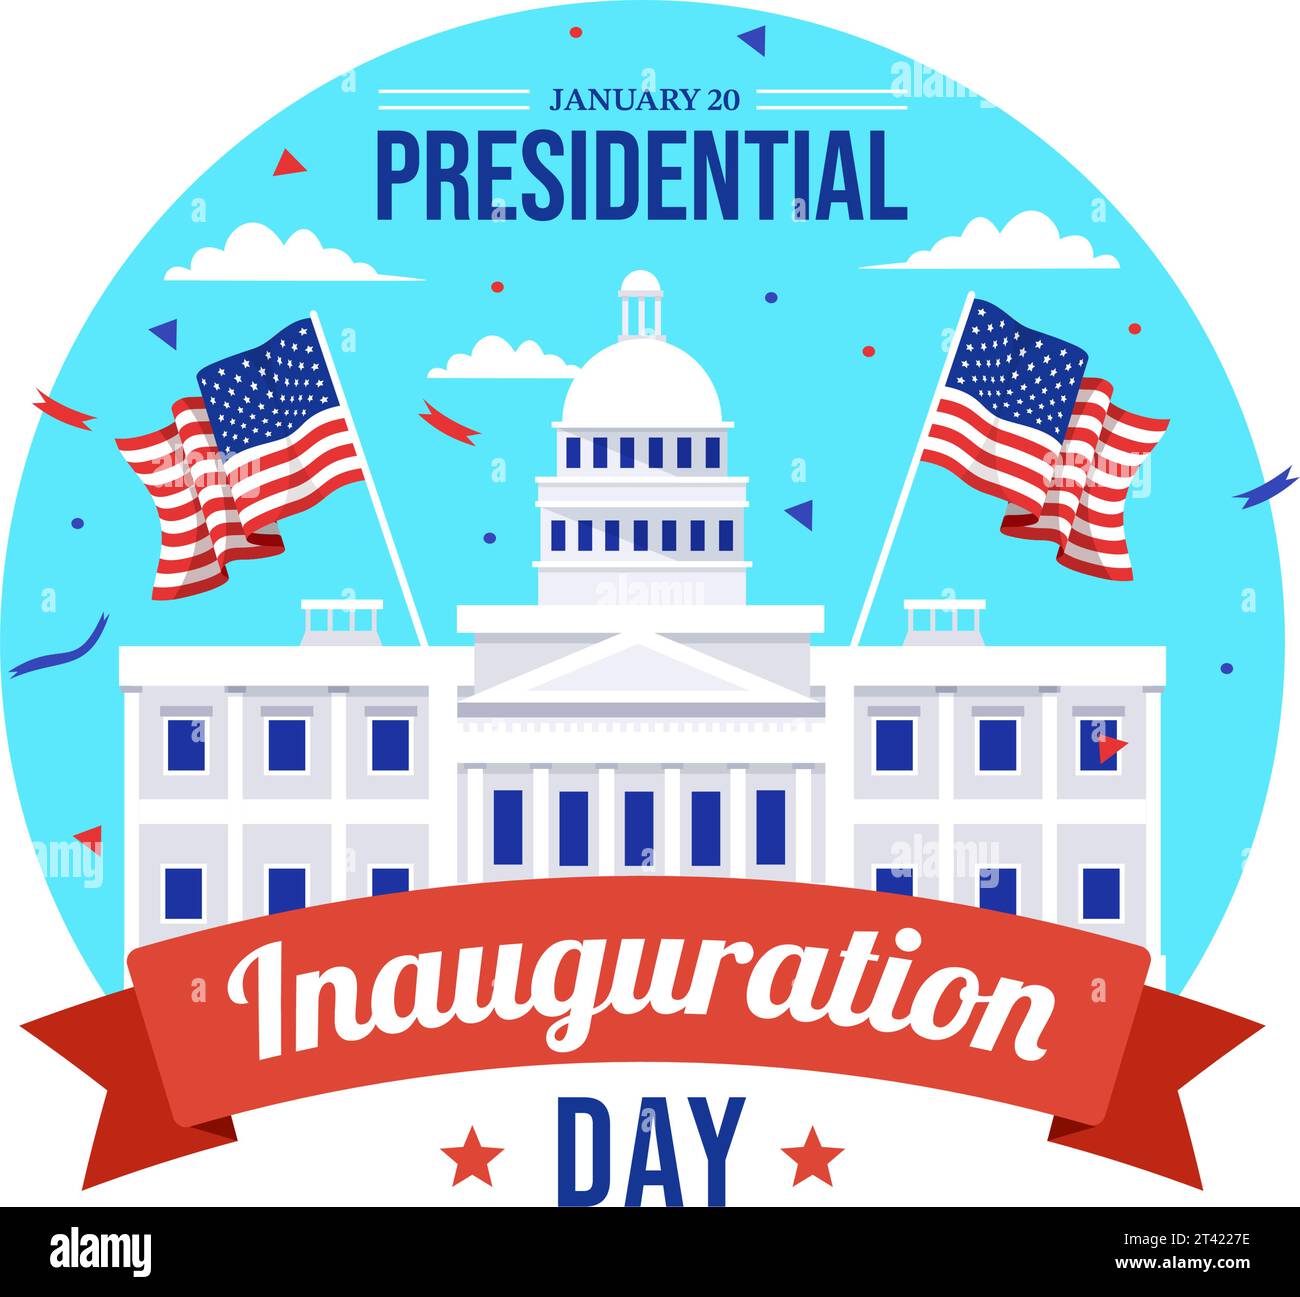 USA Presidential Inauguration Day Vector Illustration il 20 gennaio con il Campidoglio di Washington D.C. e la bandiera americana in background Design Illustrazione Vettoriale